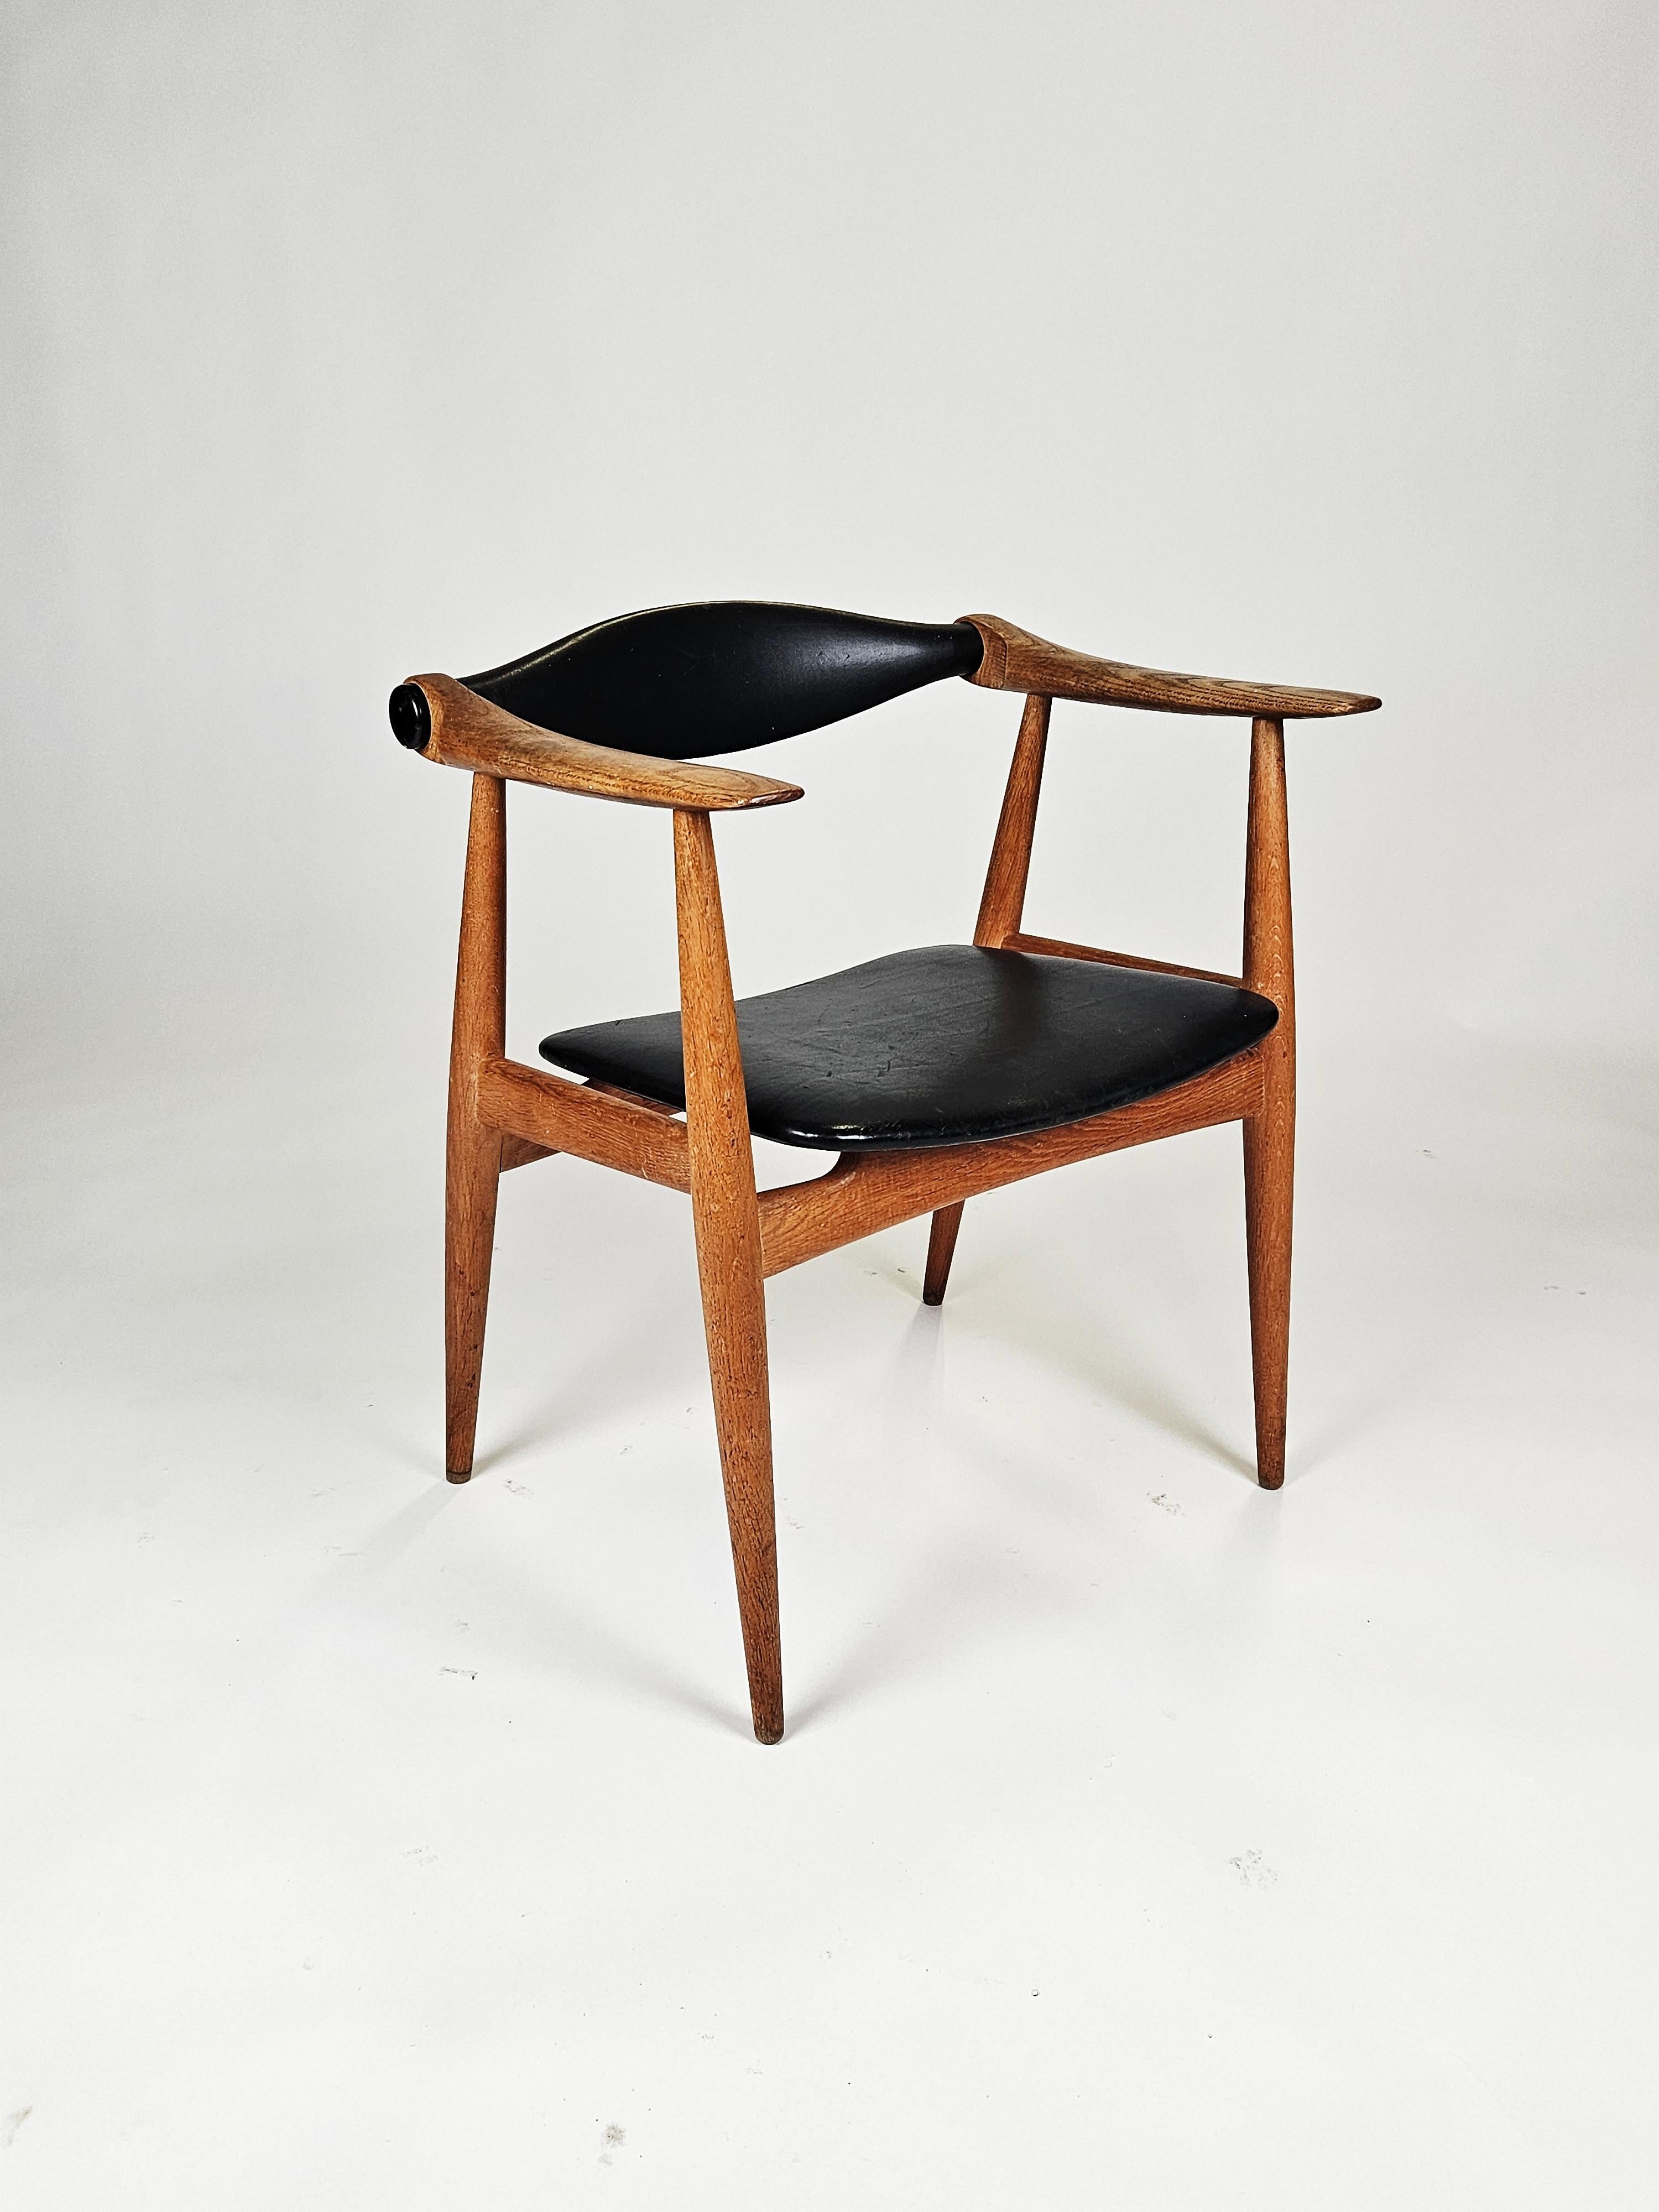 Rare fauteuil en chêne et cuir modèle 'CH-34' conçu par Hans J. Wegner et produit par Carl Hansen & Son, Danemark, années 1960. 

Fabriqué en chêne massif avec des pieds effilés. Sellerie d'origine en cuir noir. Belle patine d'origine.

Marque du